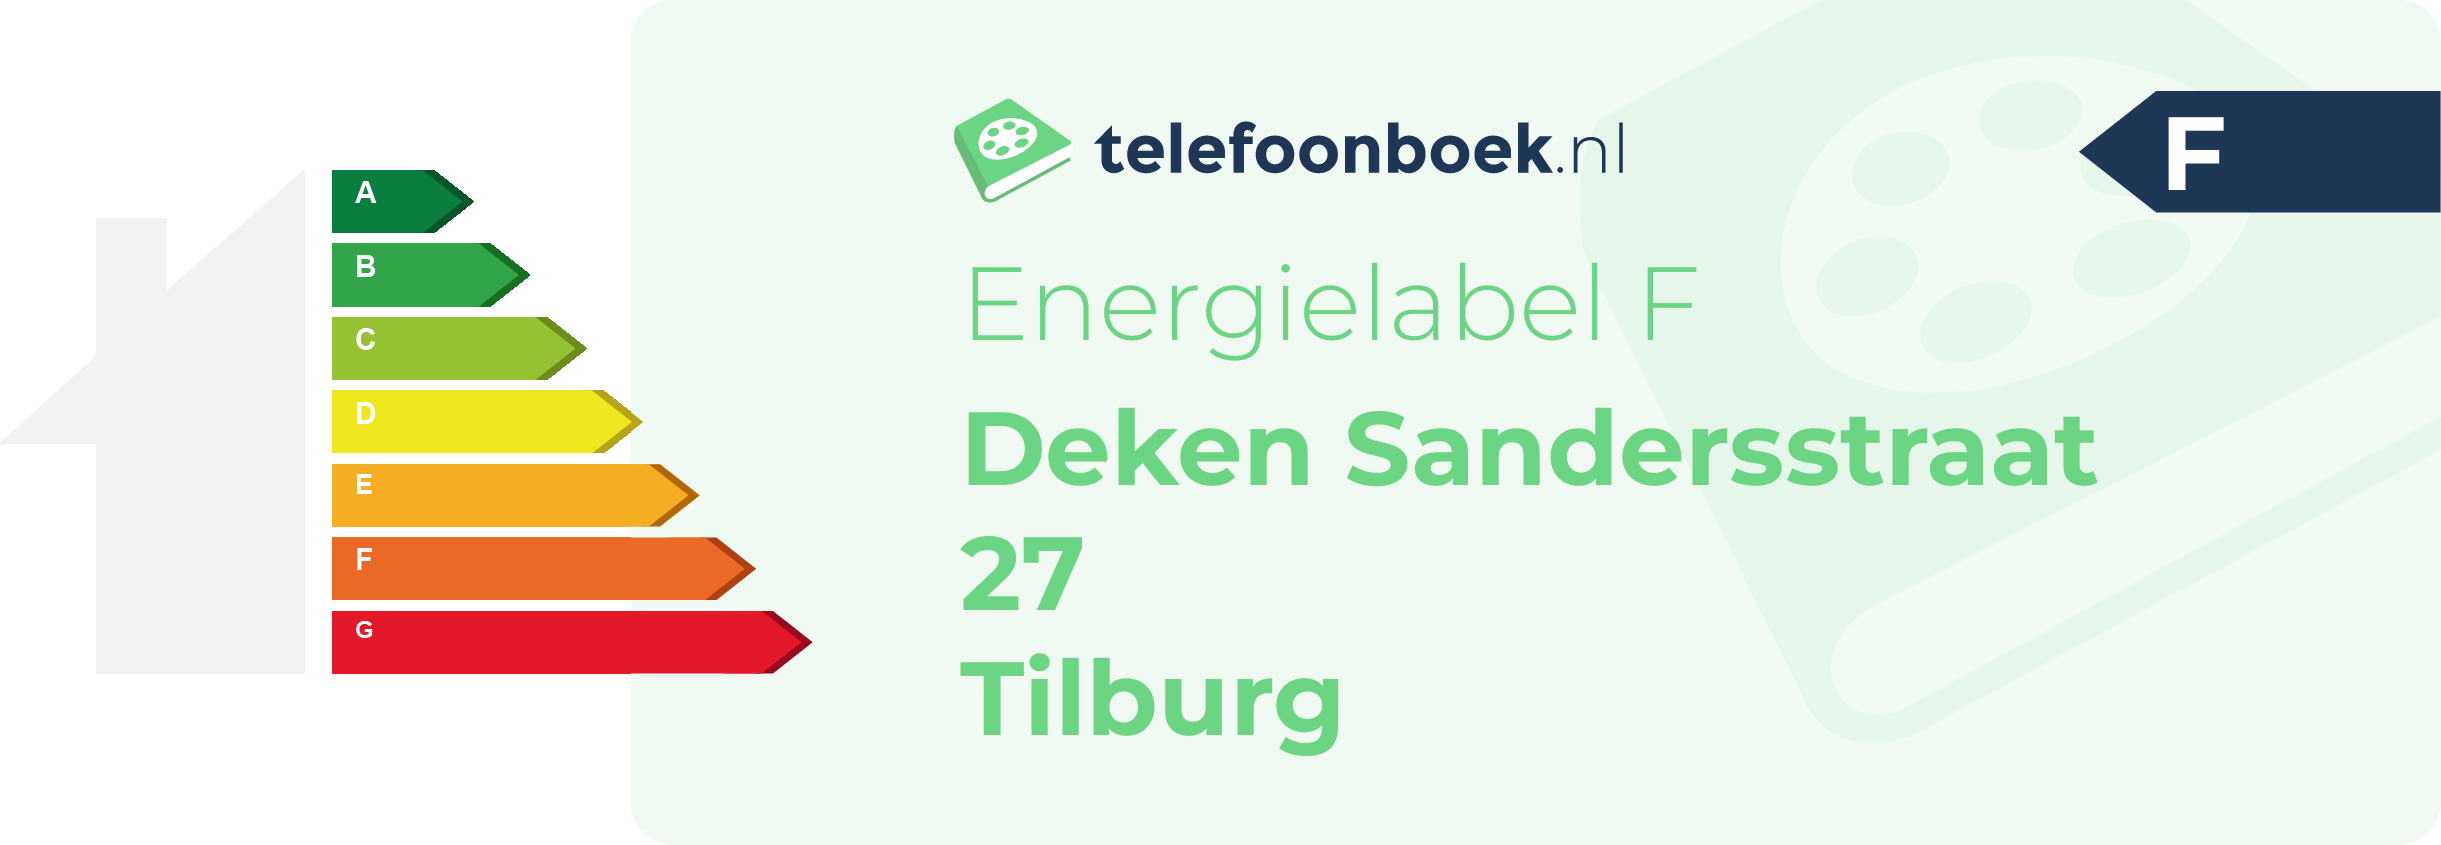 Energielabel Deken Sandersstraat 27 Tilburg